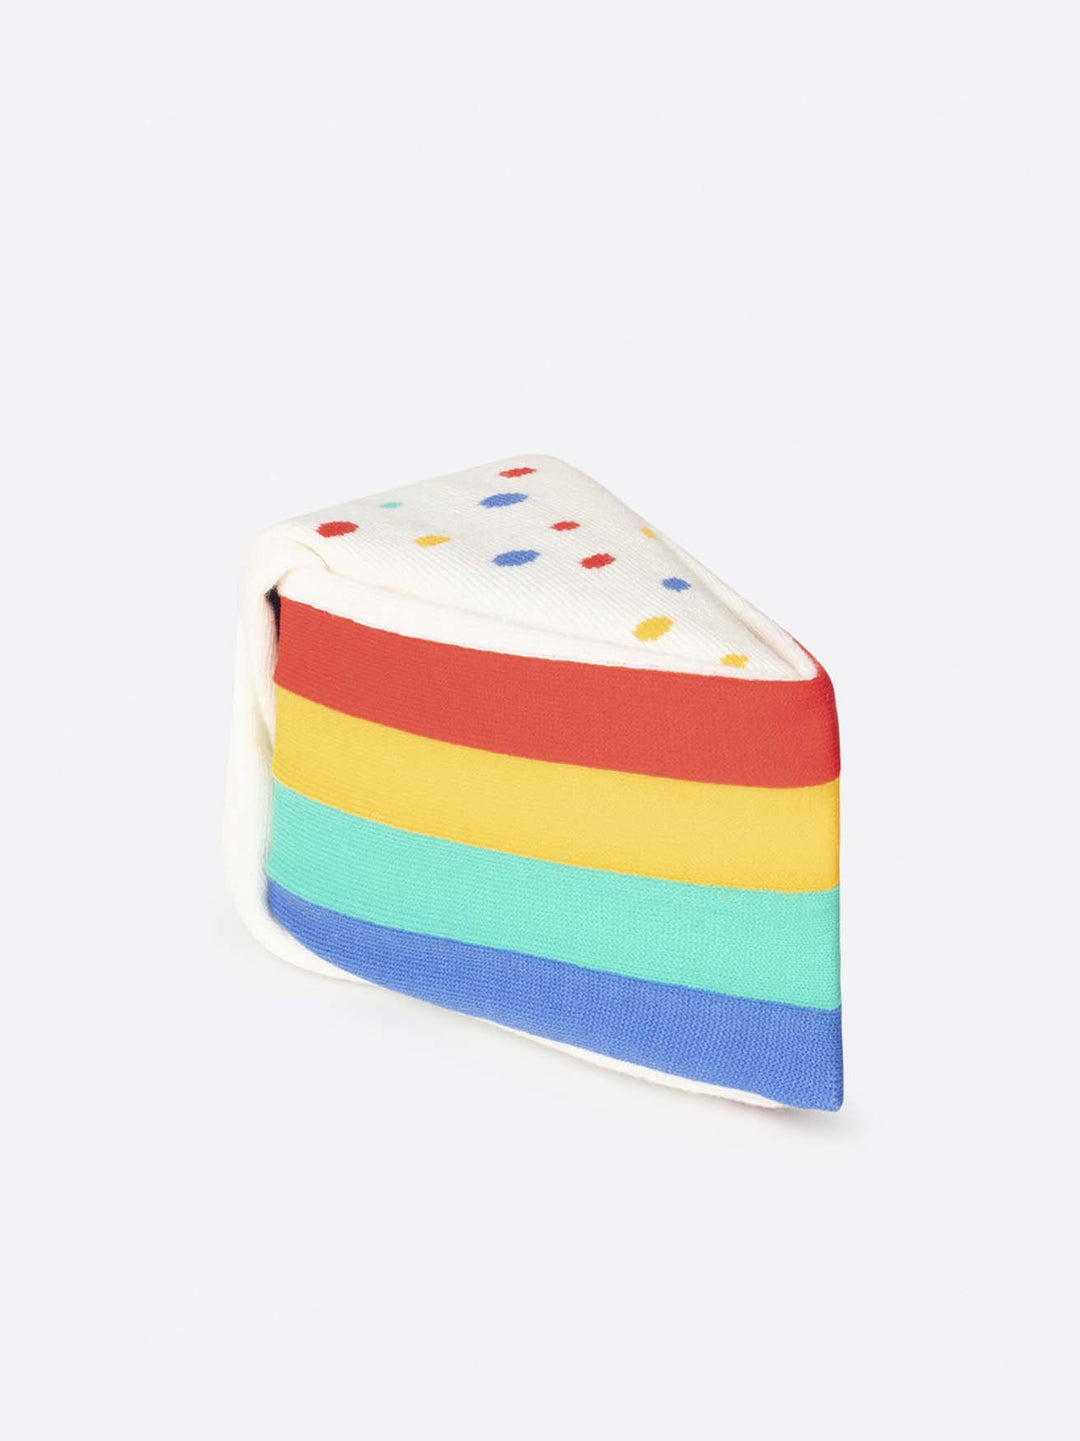 Socks - "Rainbow Cake"